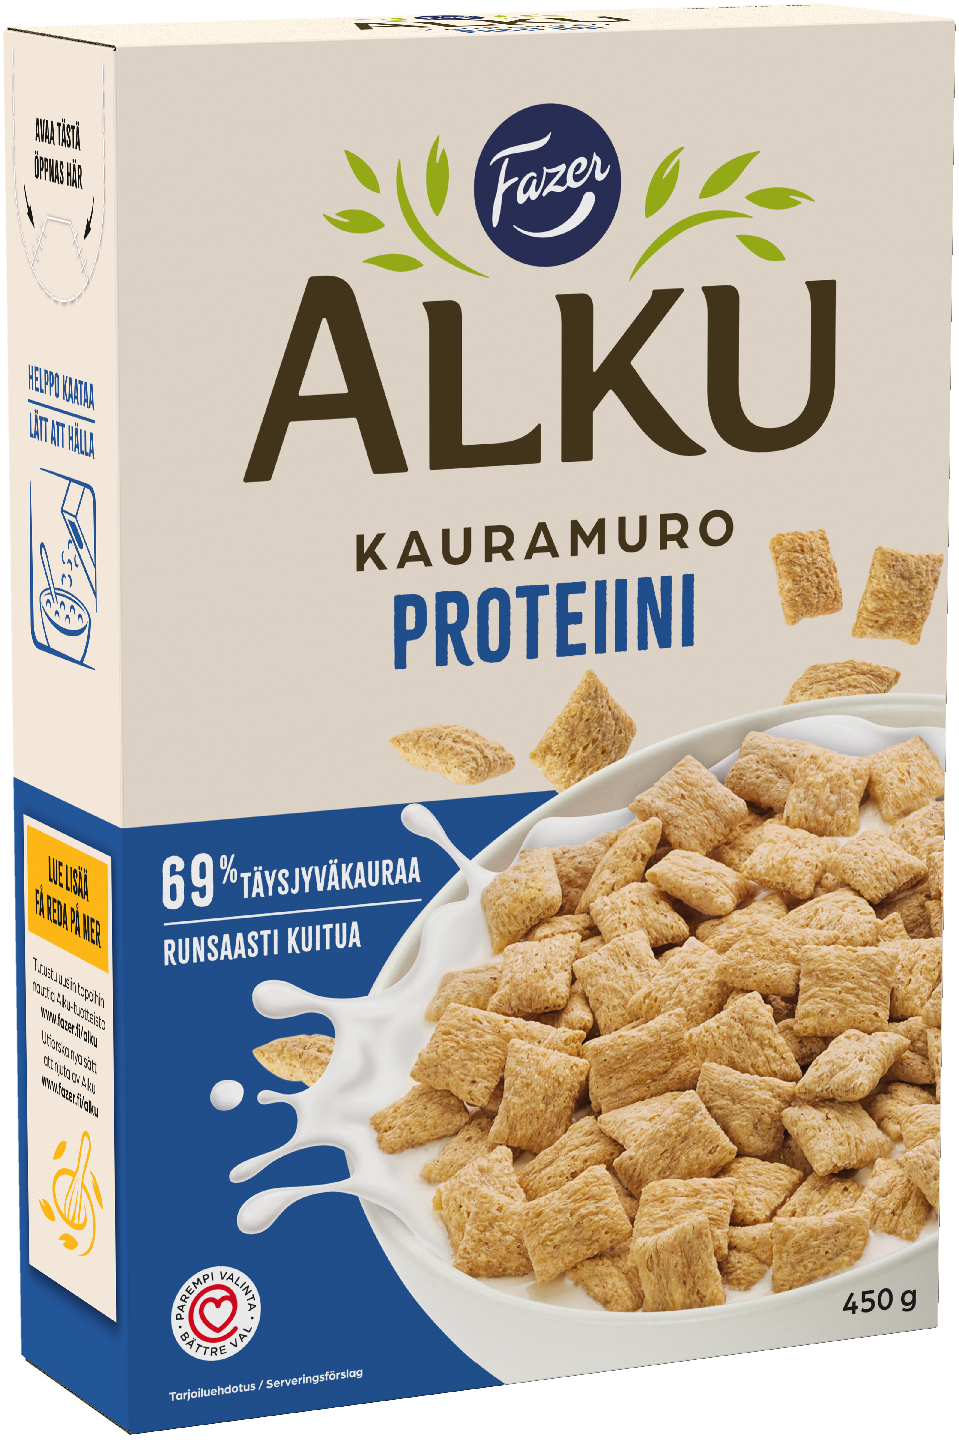 Fazer Alku kauramuro proteiini 450 g